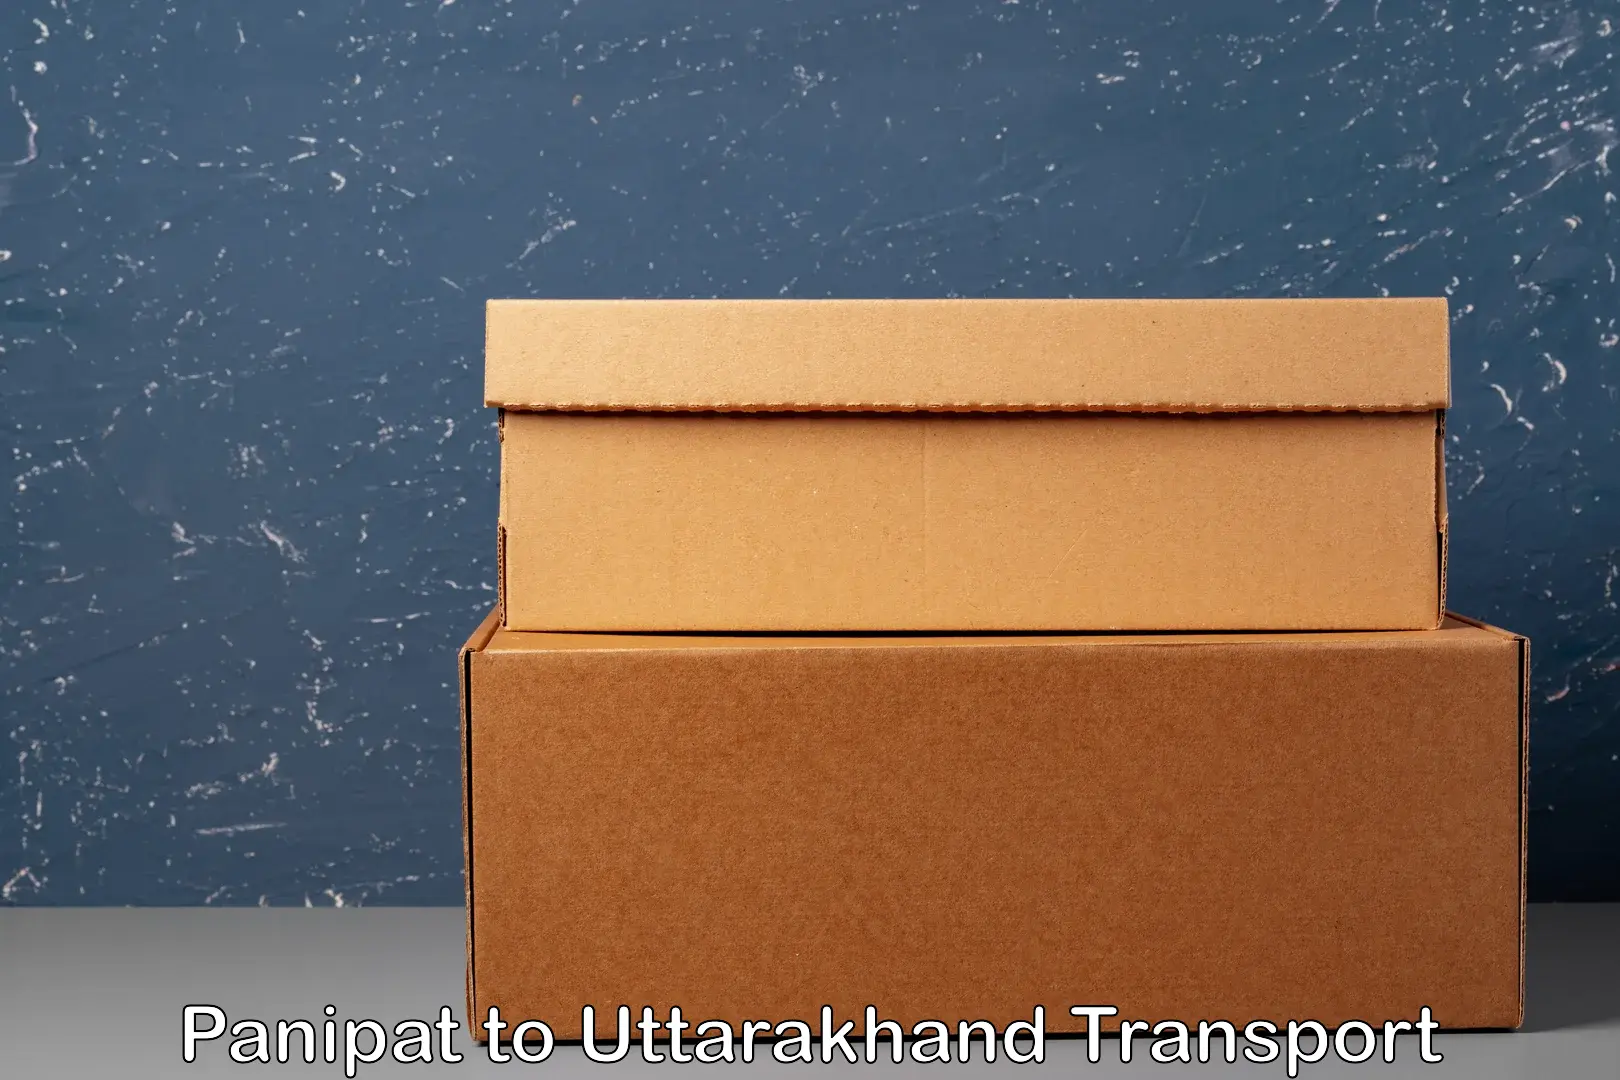 Furniture transport service Panipat to Kashipur